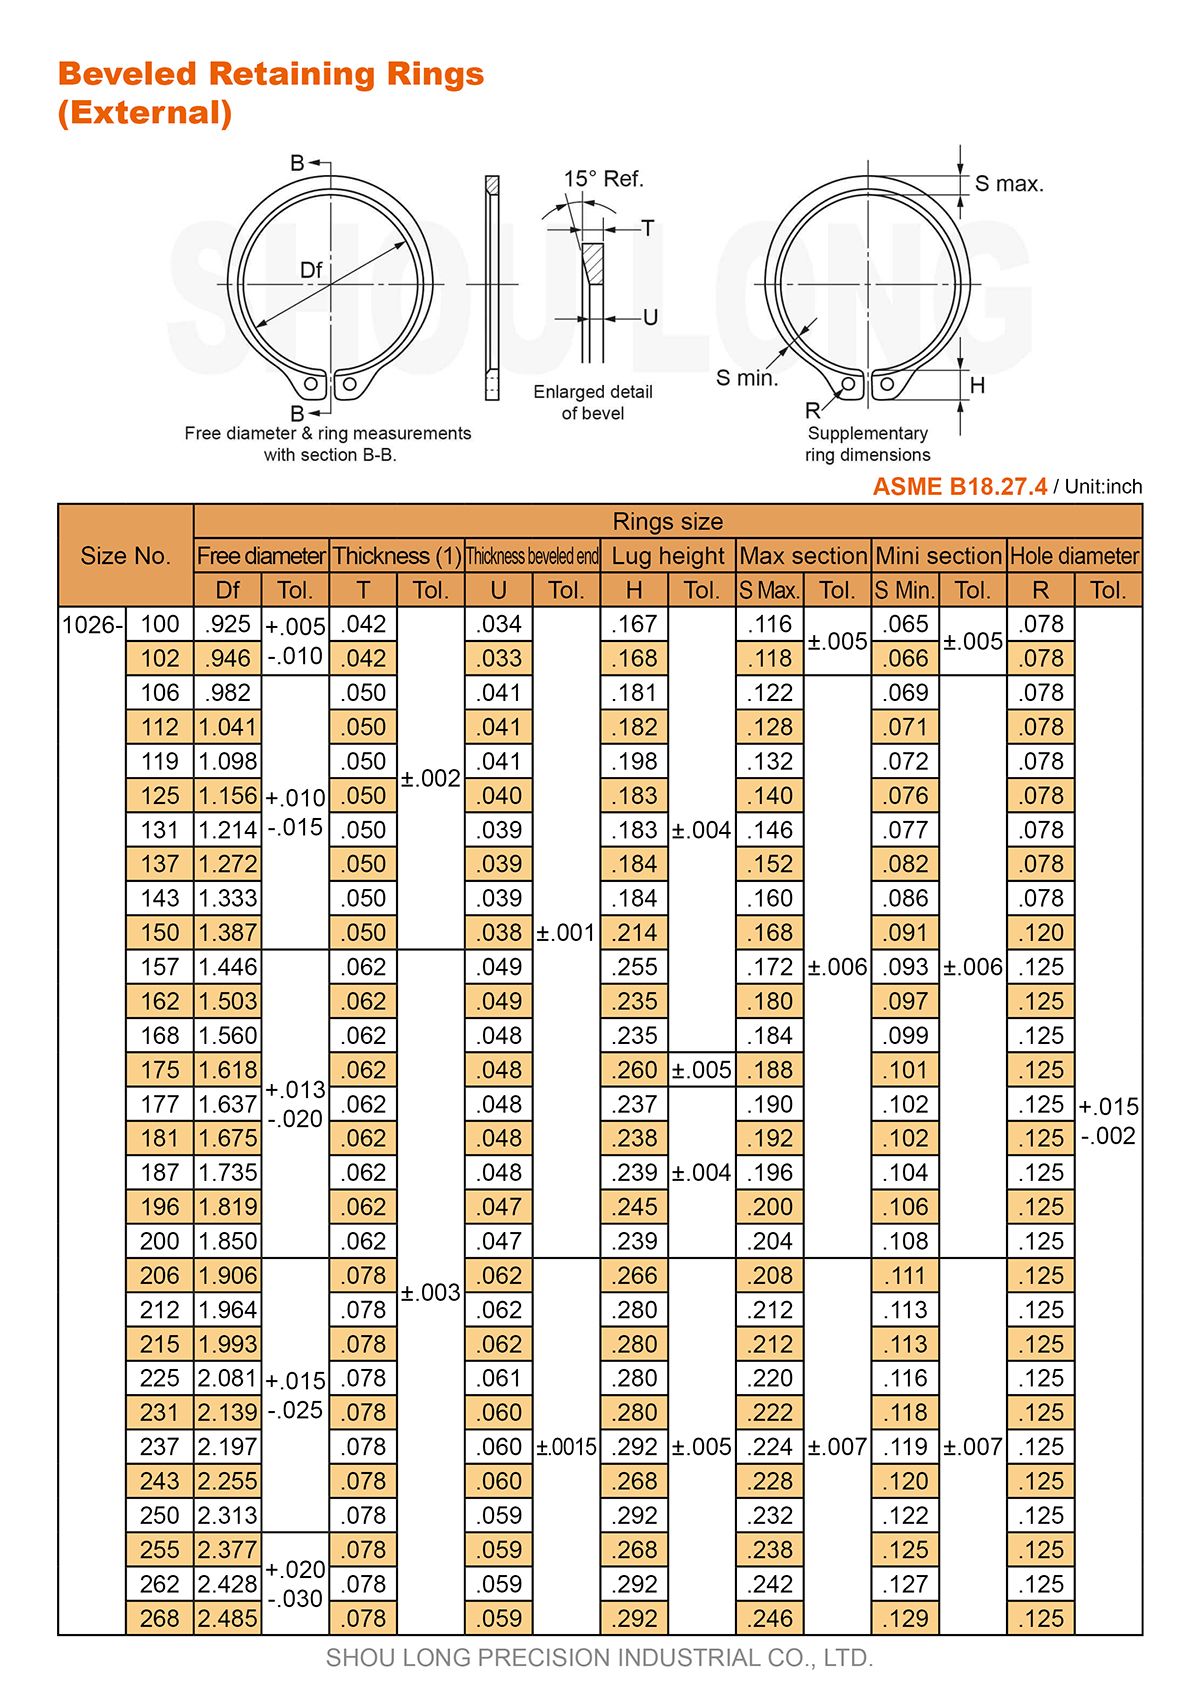 Especificação de Anéis de Retenção Biselados em Polegadas para Eixo ASME/ANSI B18.27.4-1